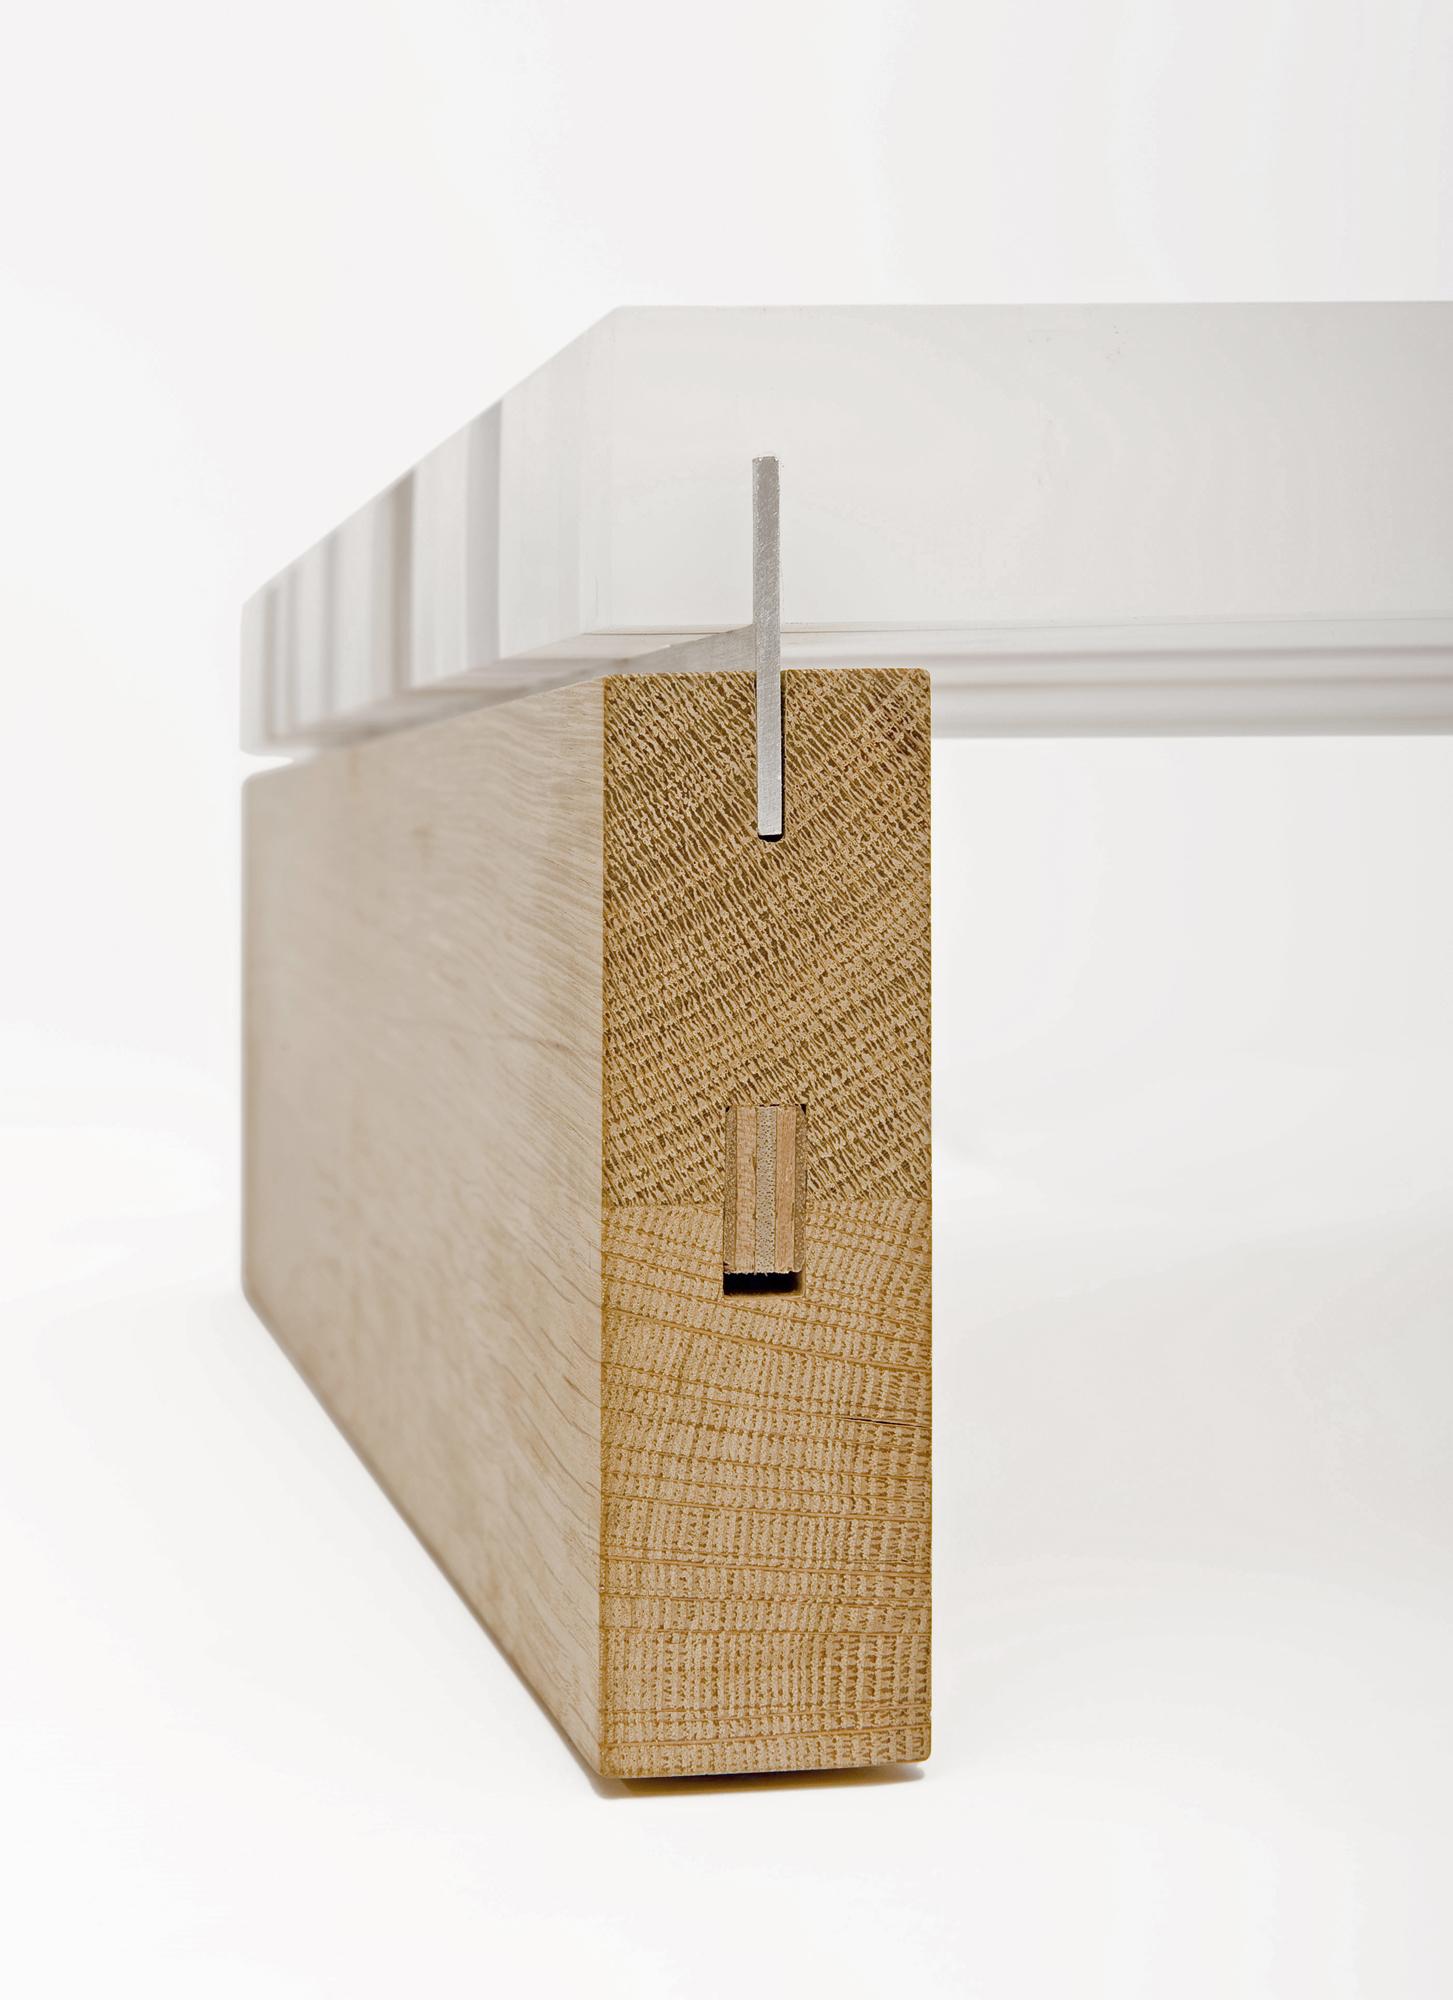 Minimalist Plet Coffee Table from reclaimed acrylic and oak wood by Reinier de Jong  For Sale